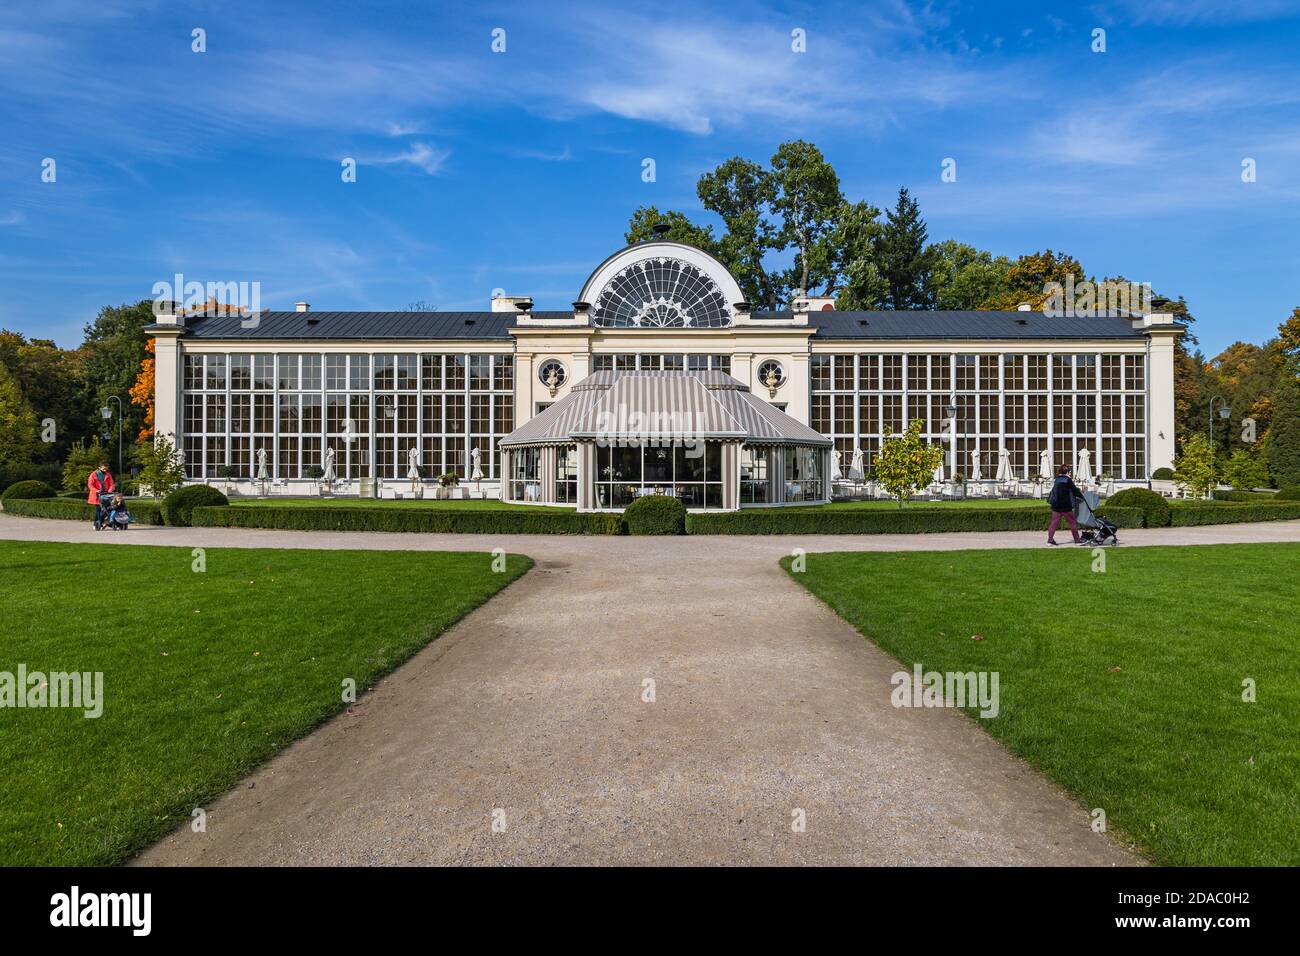 Neues Orangery Gebäude und Restaurant im Lazienkowski Park auch Lazienki Park genannt - Königliche Bäder, größter Park in Warschau Stadt, Polen Stockfoto